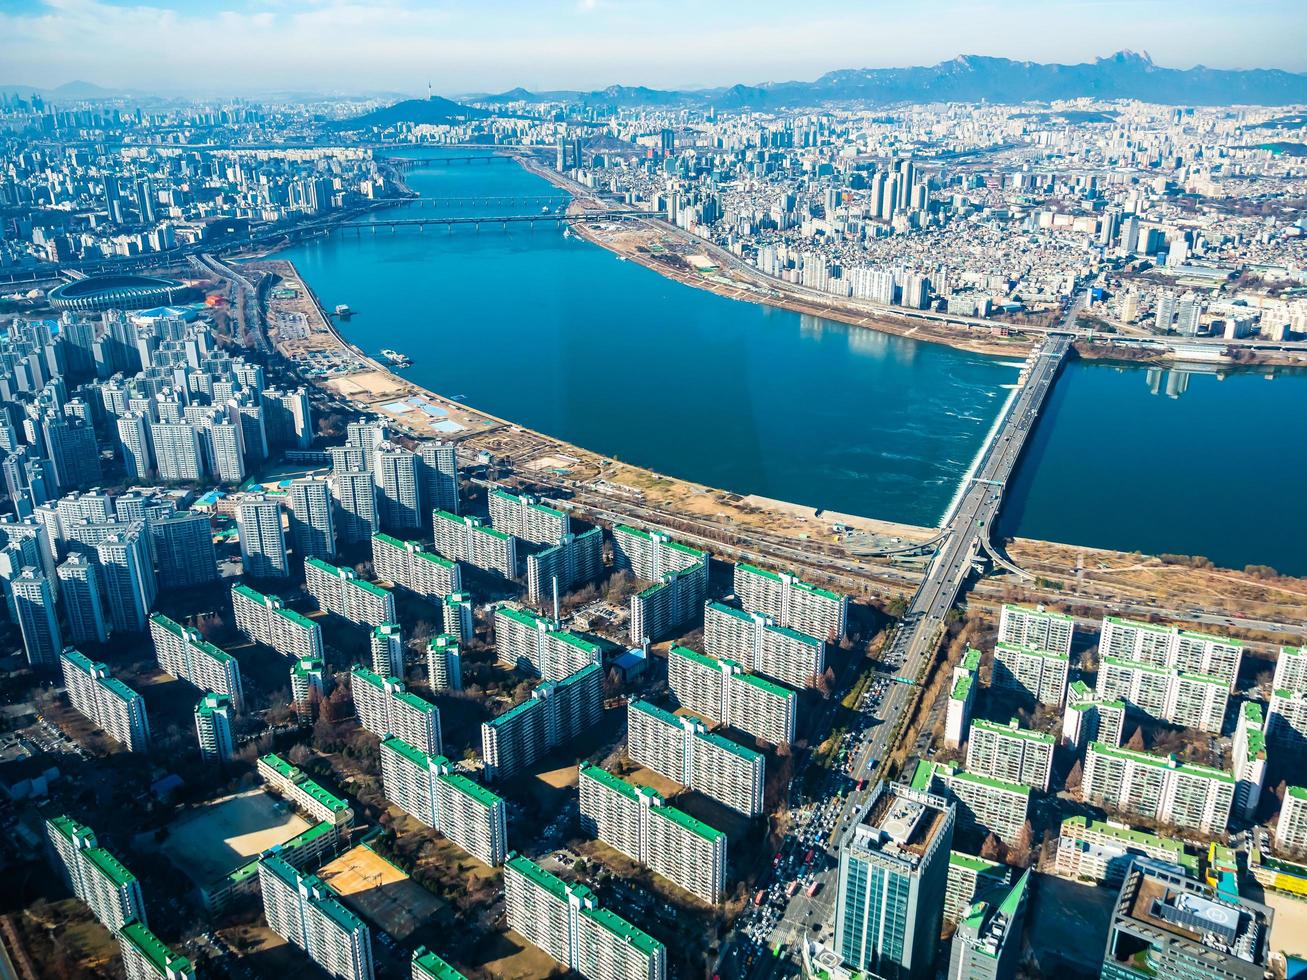 Vue aérienne de la ville de Séoul, Corée du Sud photo